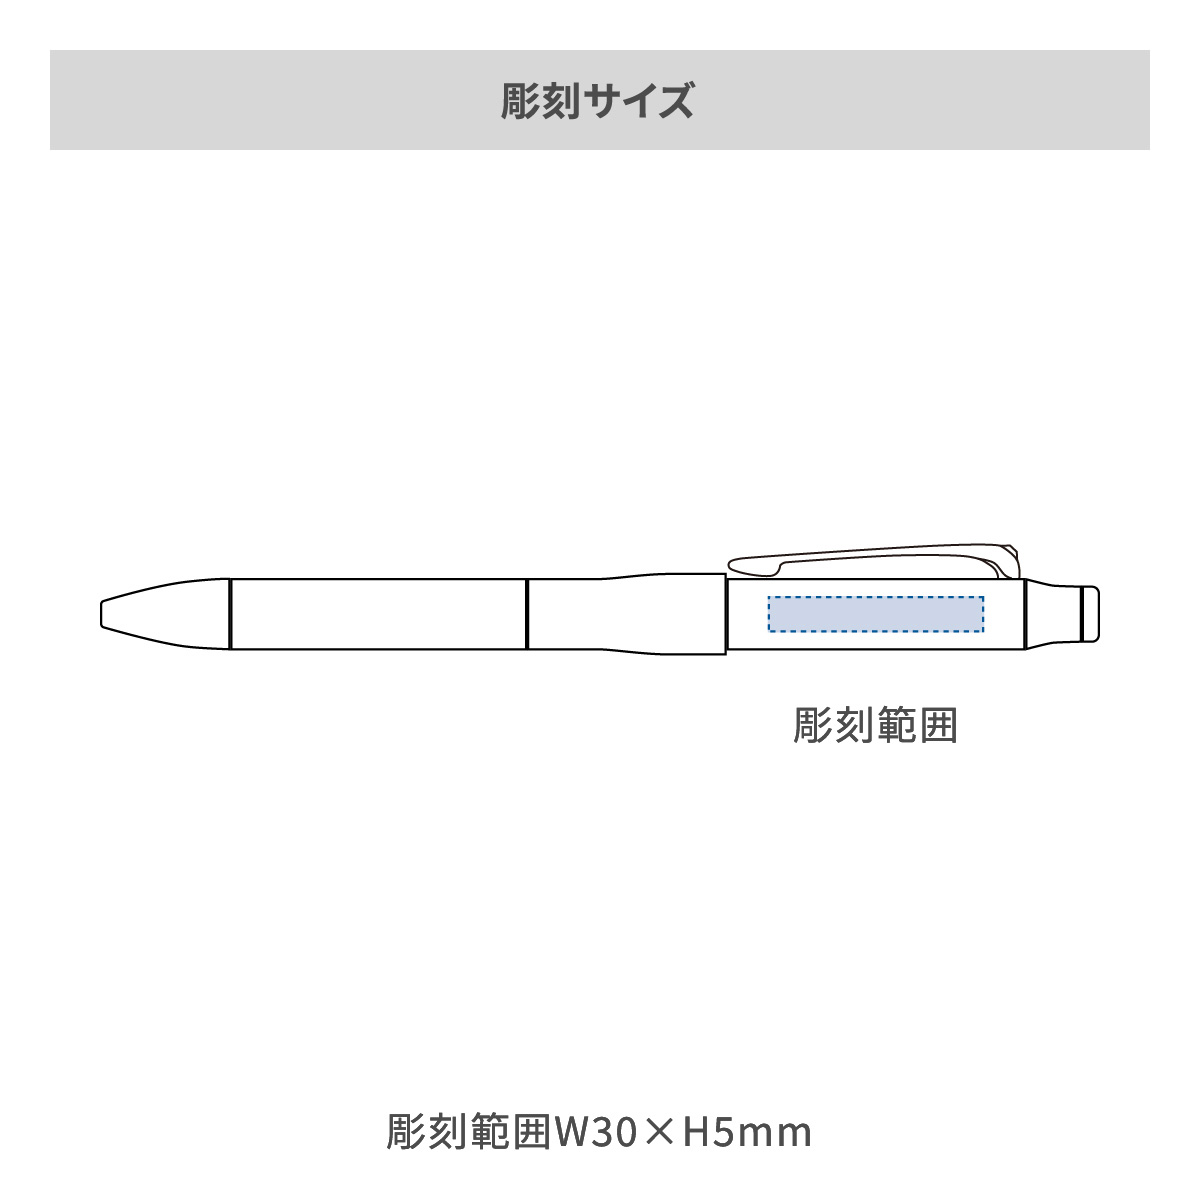 【短納期】三菱鉛筆 ジェットストリーム プライム 多機能ペン 3&1 0.7mm【多機能ペン / レーザー彫刻】 画像2